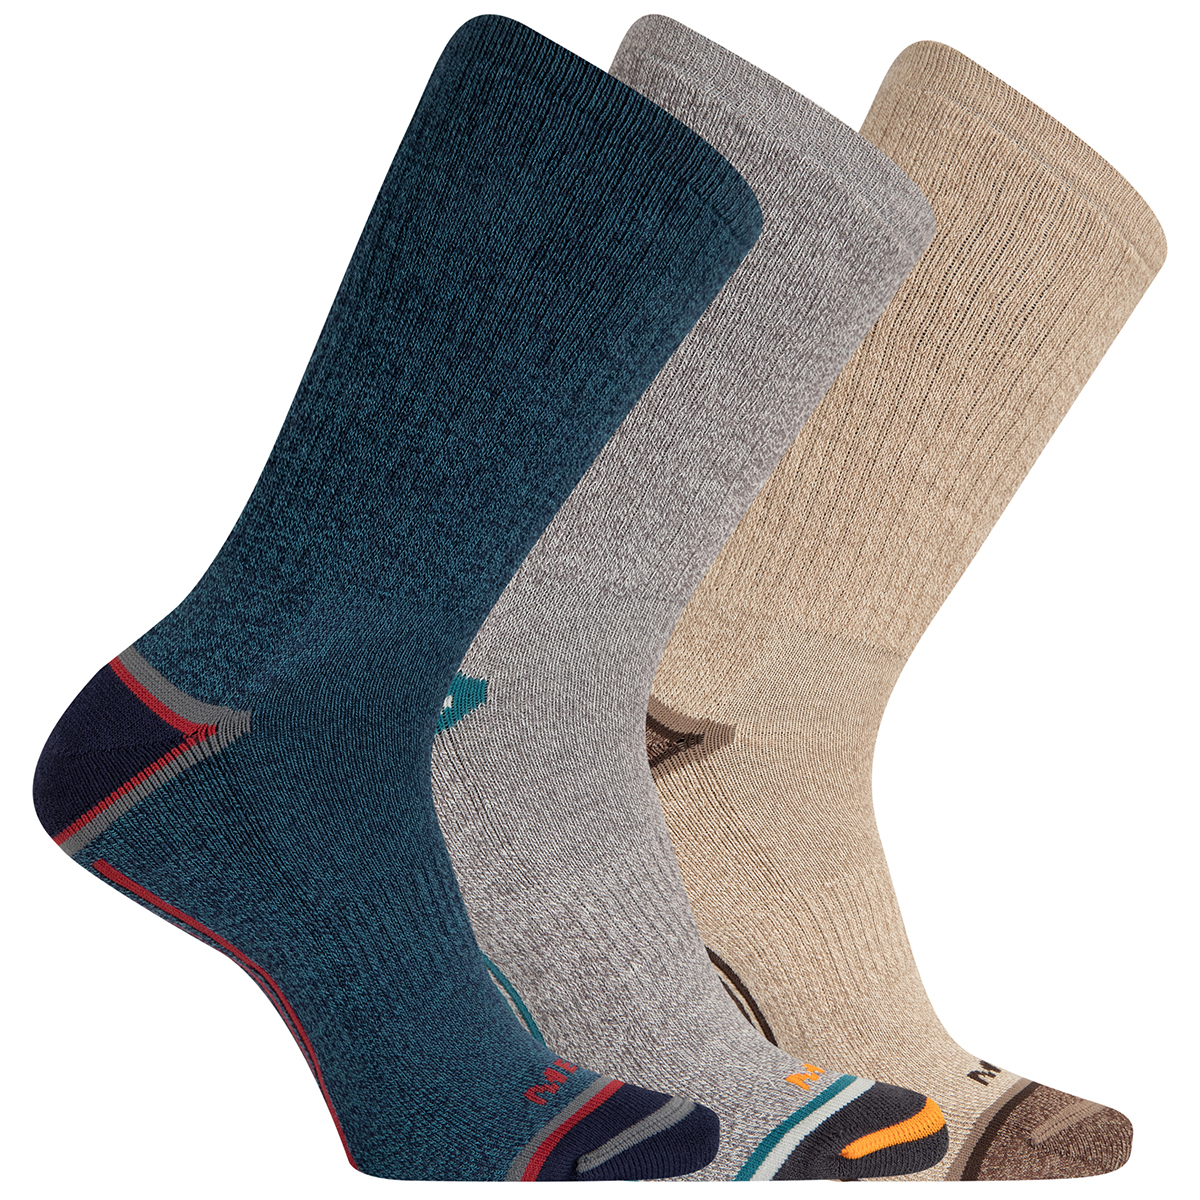 Merrell Men's Cushioned Elite Hiker Crew Socks, 3-Pack - Blue, M/L